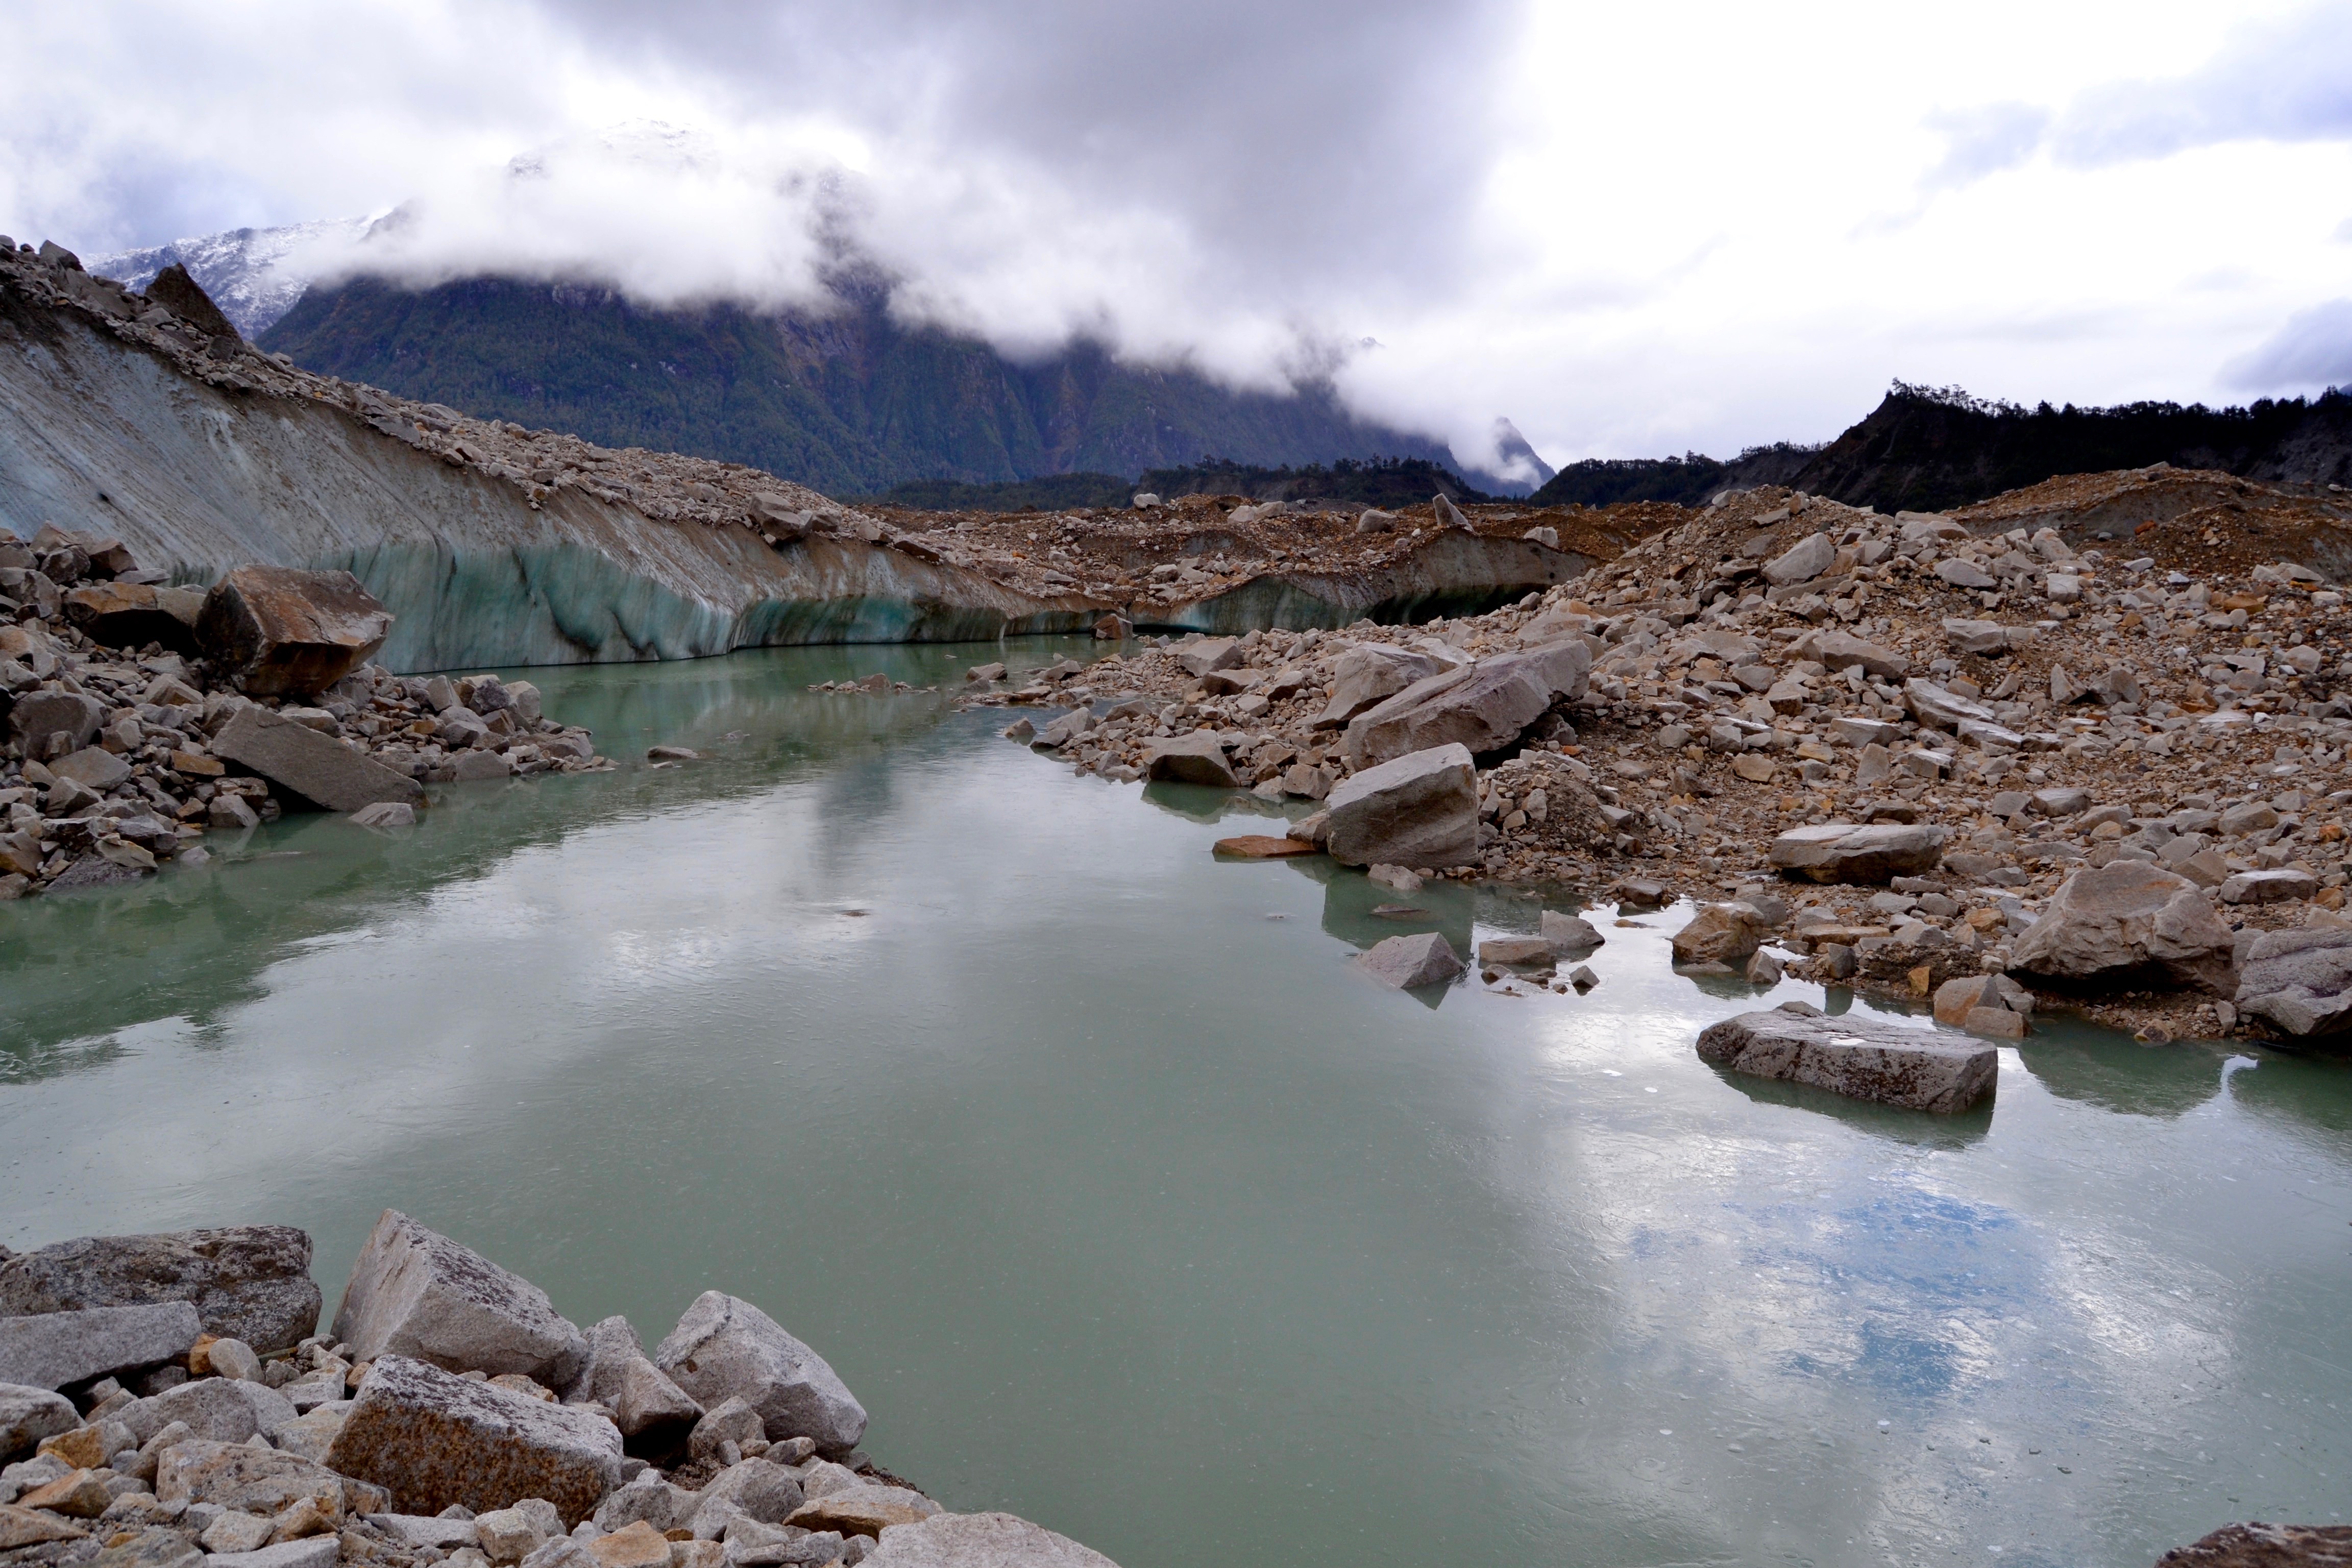 Tramo del circuito justo antes de llegar al glaciar: rocas, pequeñas lagunas y hielo.